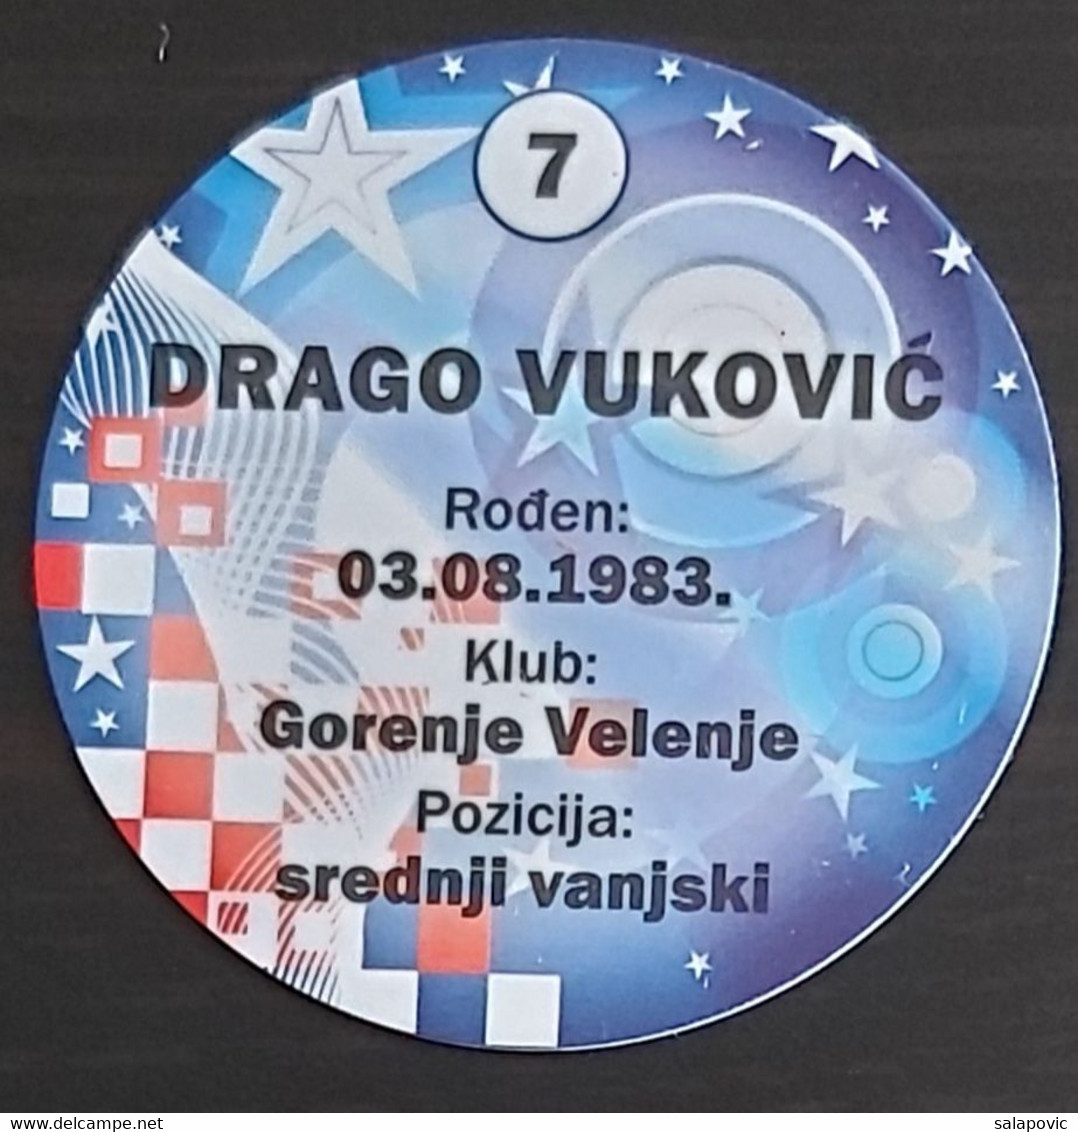 Handball, Croatian National Handball Team, Drago Vukovic - Handball